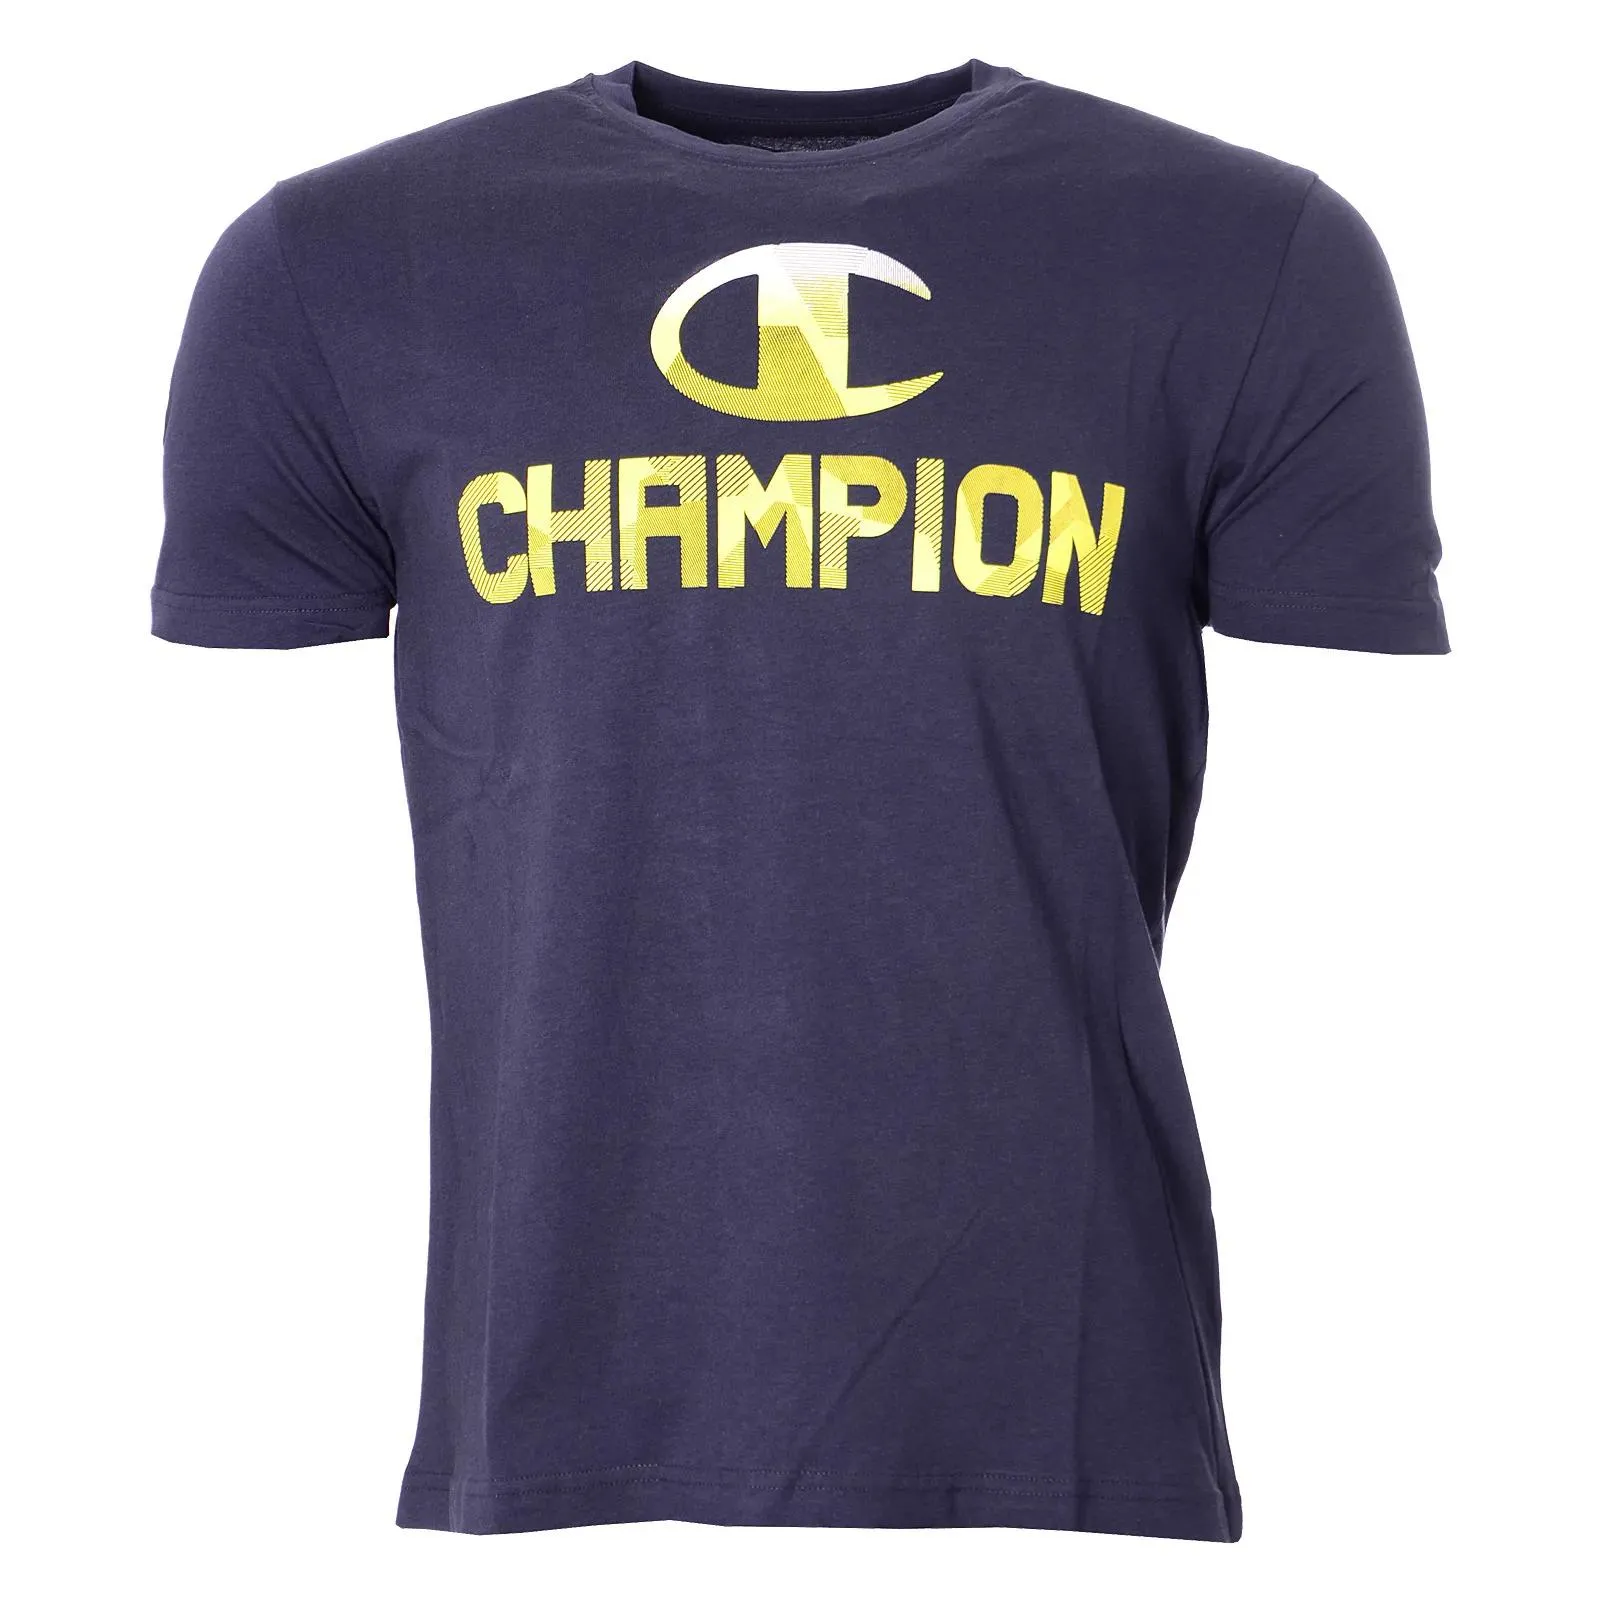 Champion T-shirt SINGLE JERSEY GRAPHIC T-SHIRT 